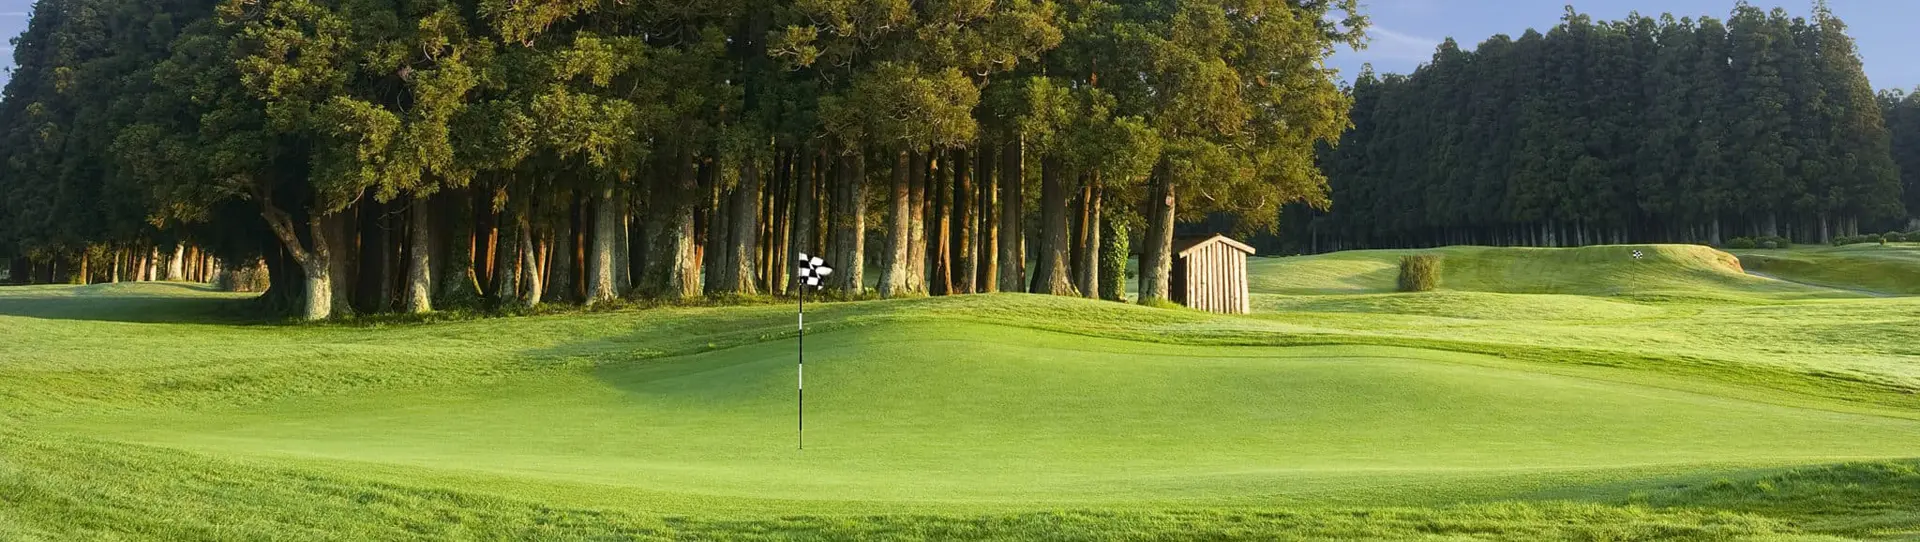 Portugal golf courses - Furnas Golf Course - Photo 1